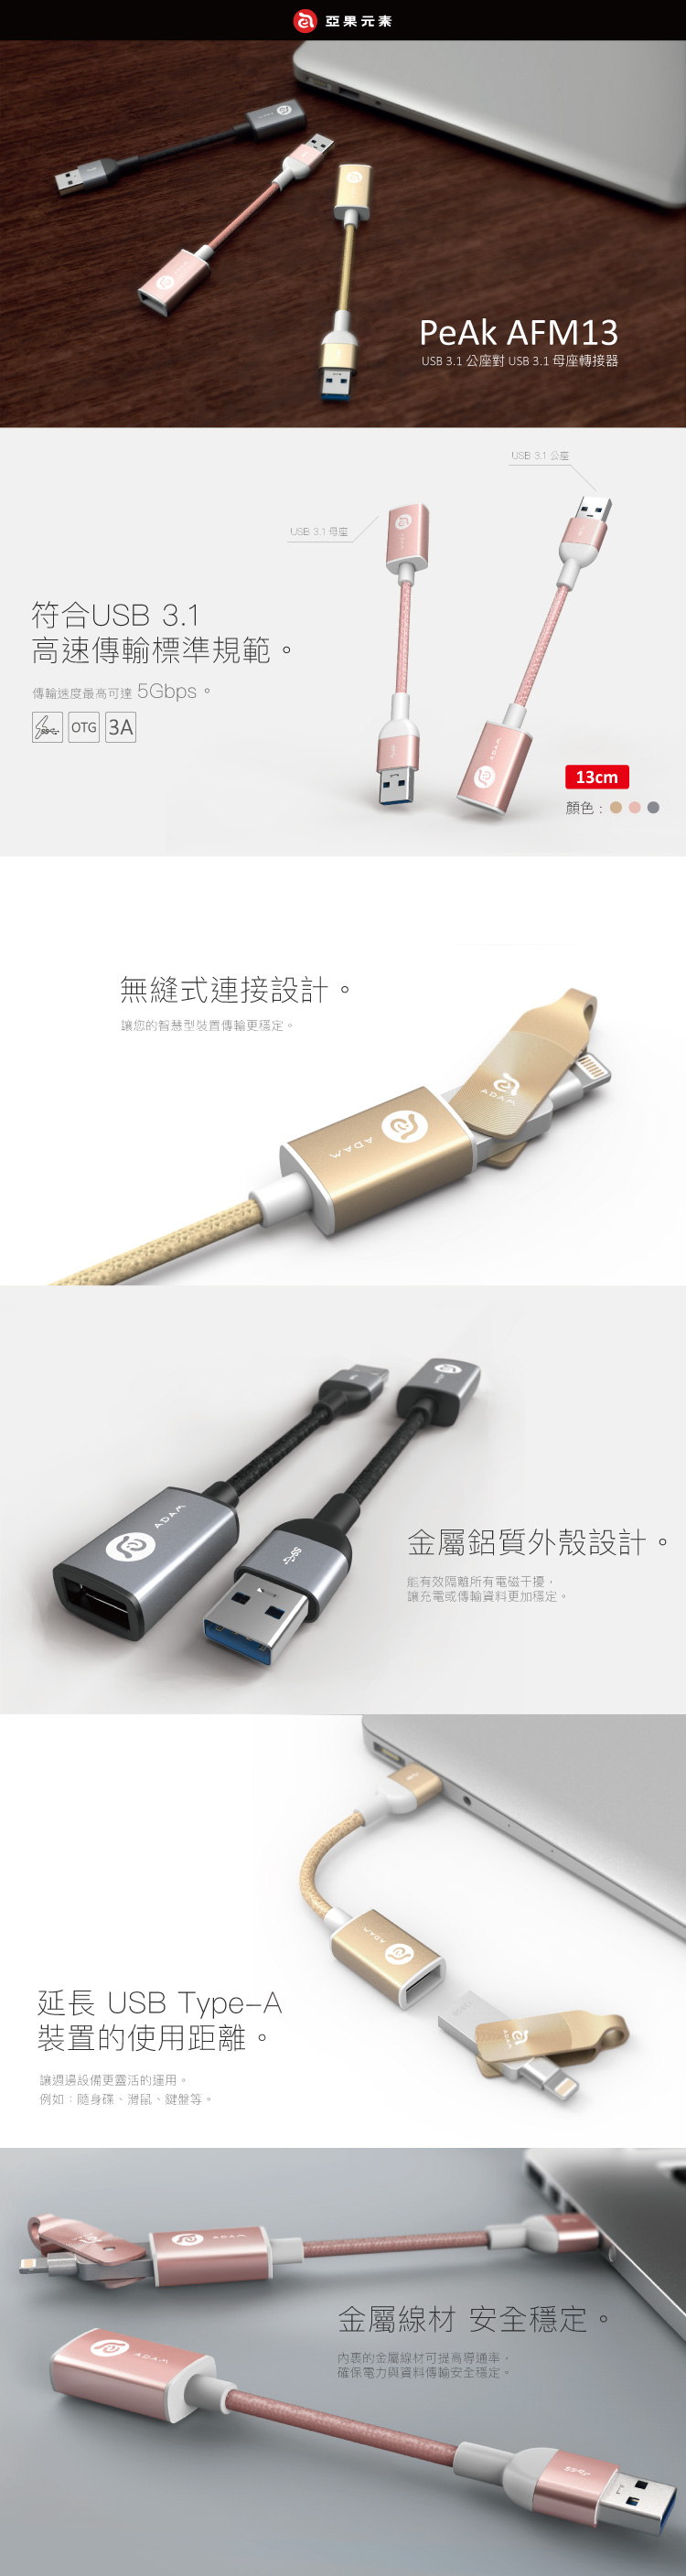 亞果元素 PeAk AFM13 USB3.1 公座對 USB3.1 母座轉接器 13cm( 灰)